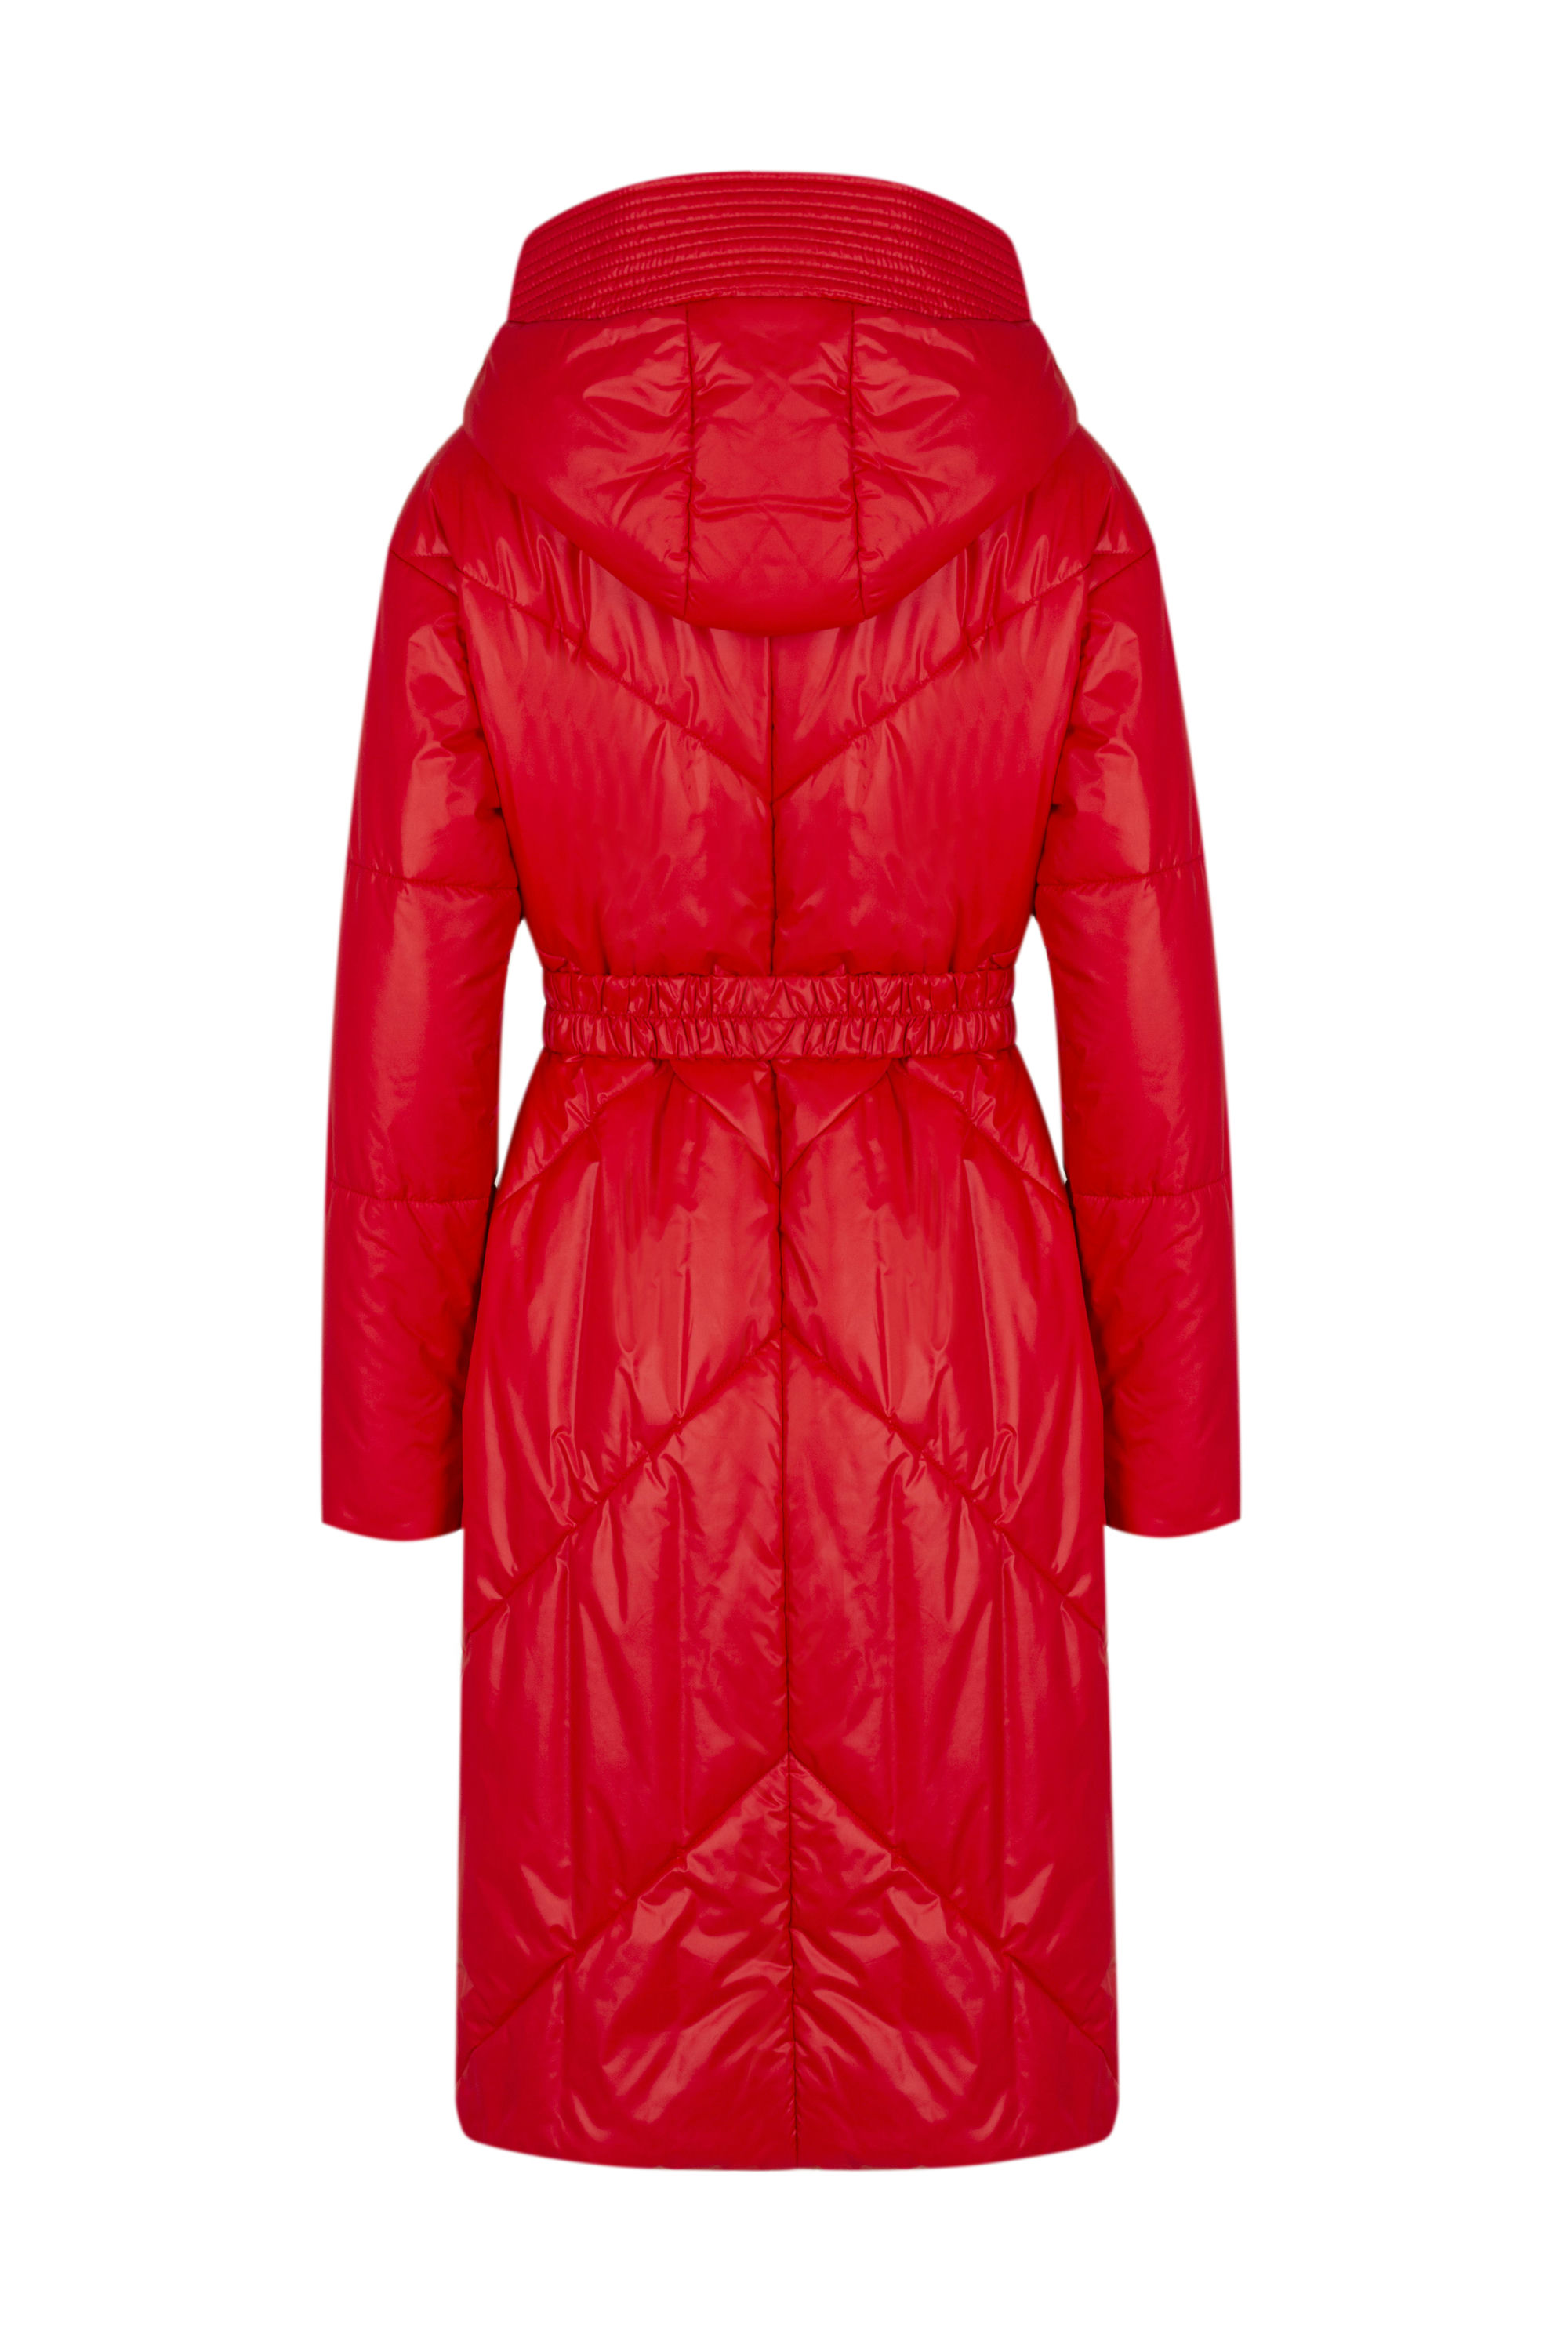 Пальто женское плащевое утепленное 5-12174-1. Фото 7.